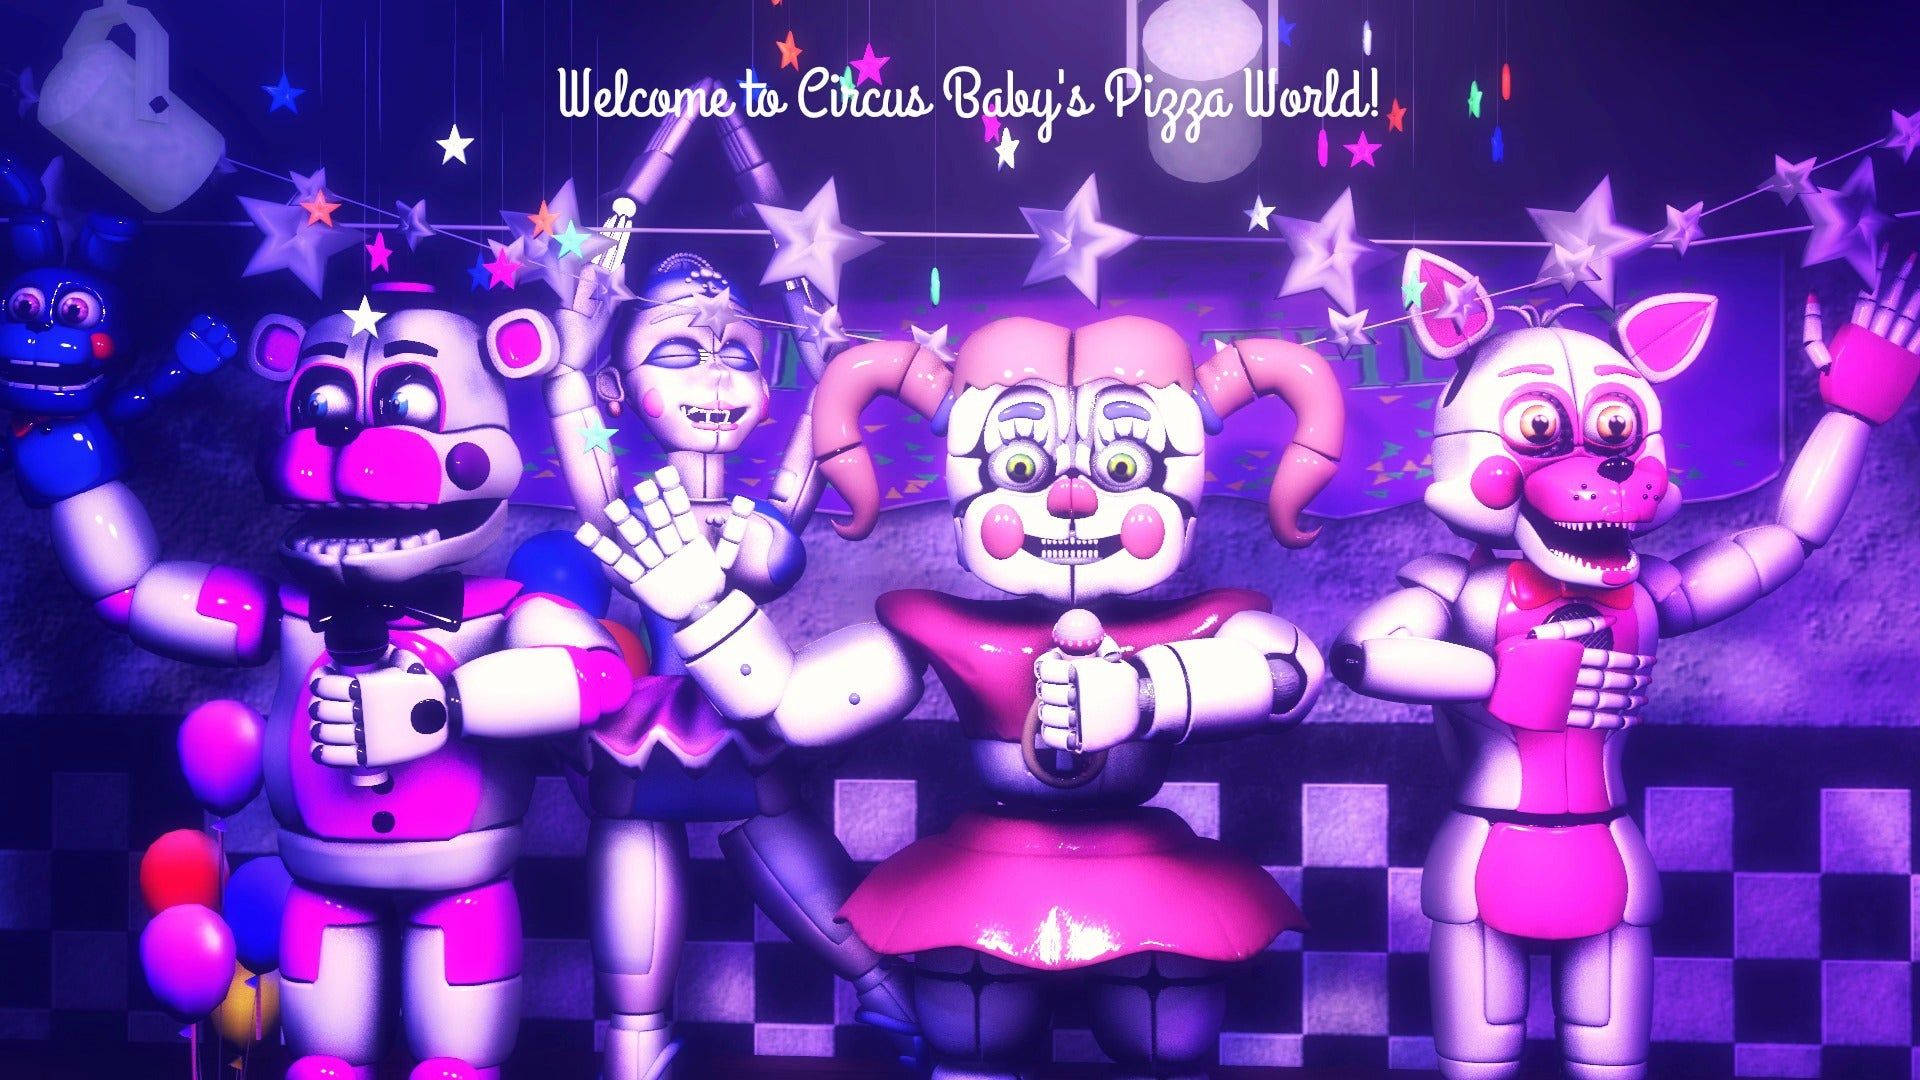 Fiestade Bienvenida De Circus Baby Fondo de pantalla